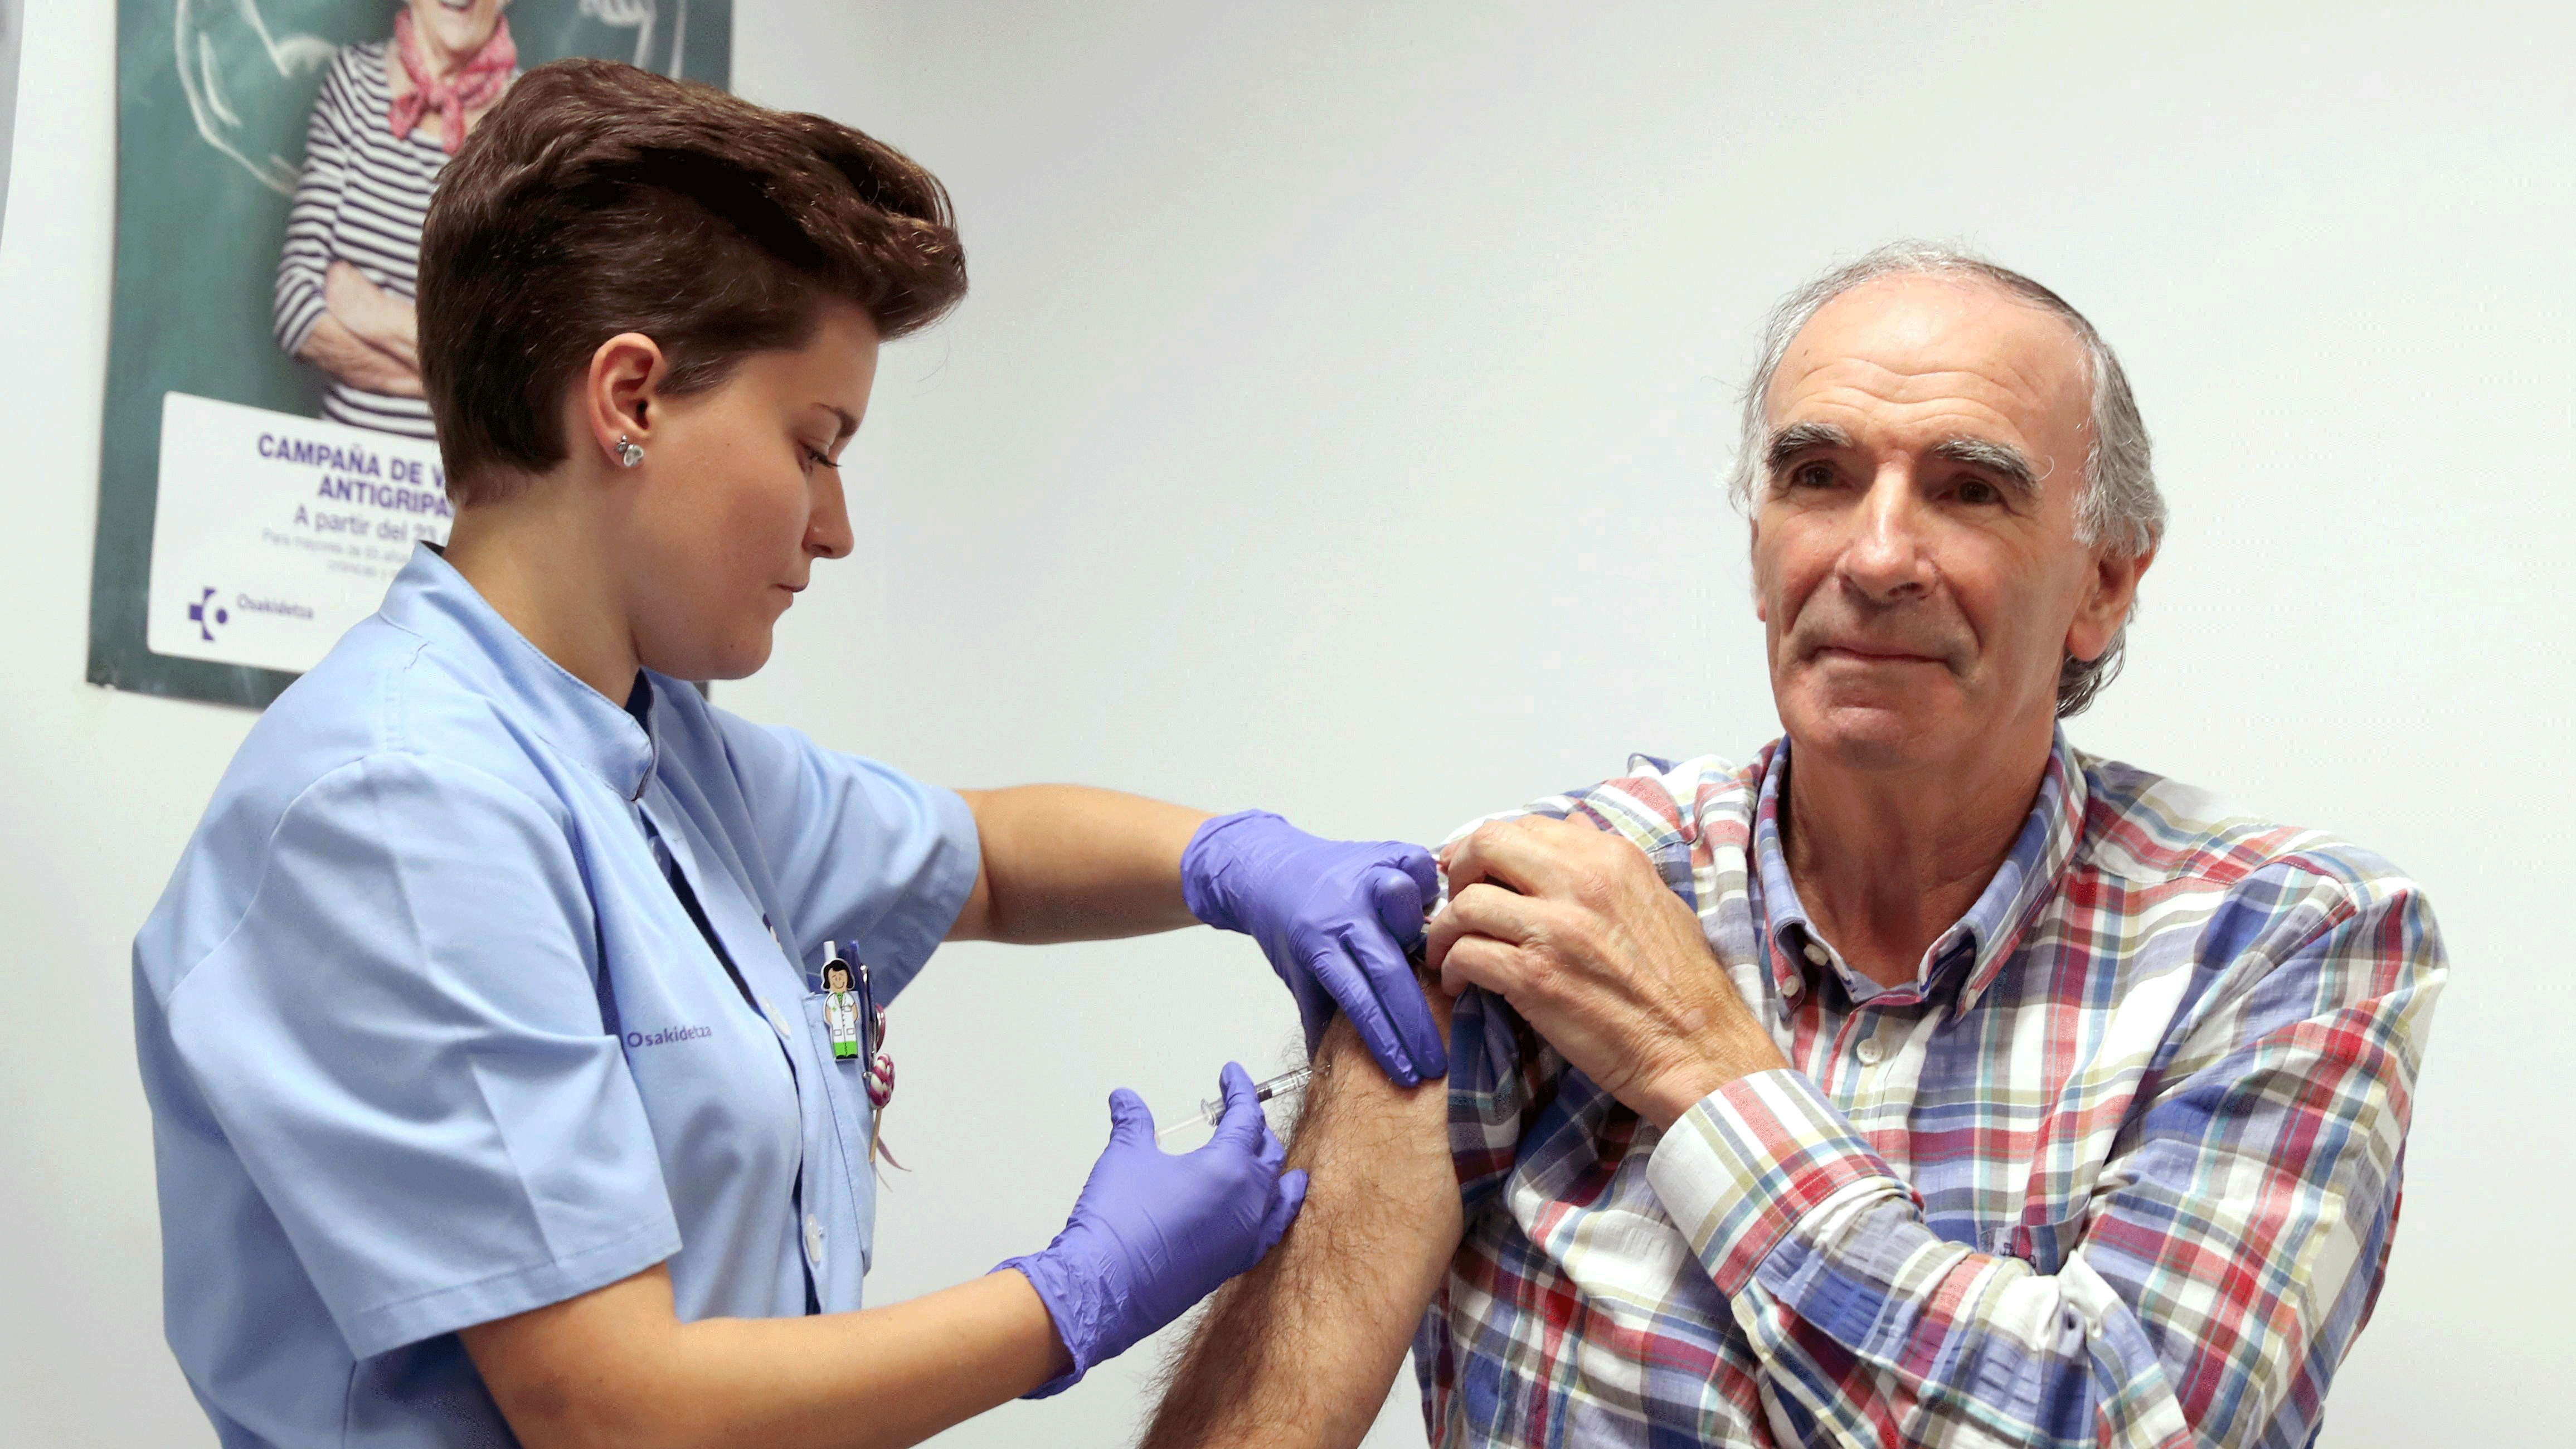 Ir al Video Arranca la campaña de vacunación contra la gripe en Cataluña, Galicía, Andalucía y País Vasco